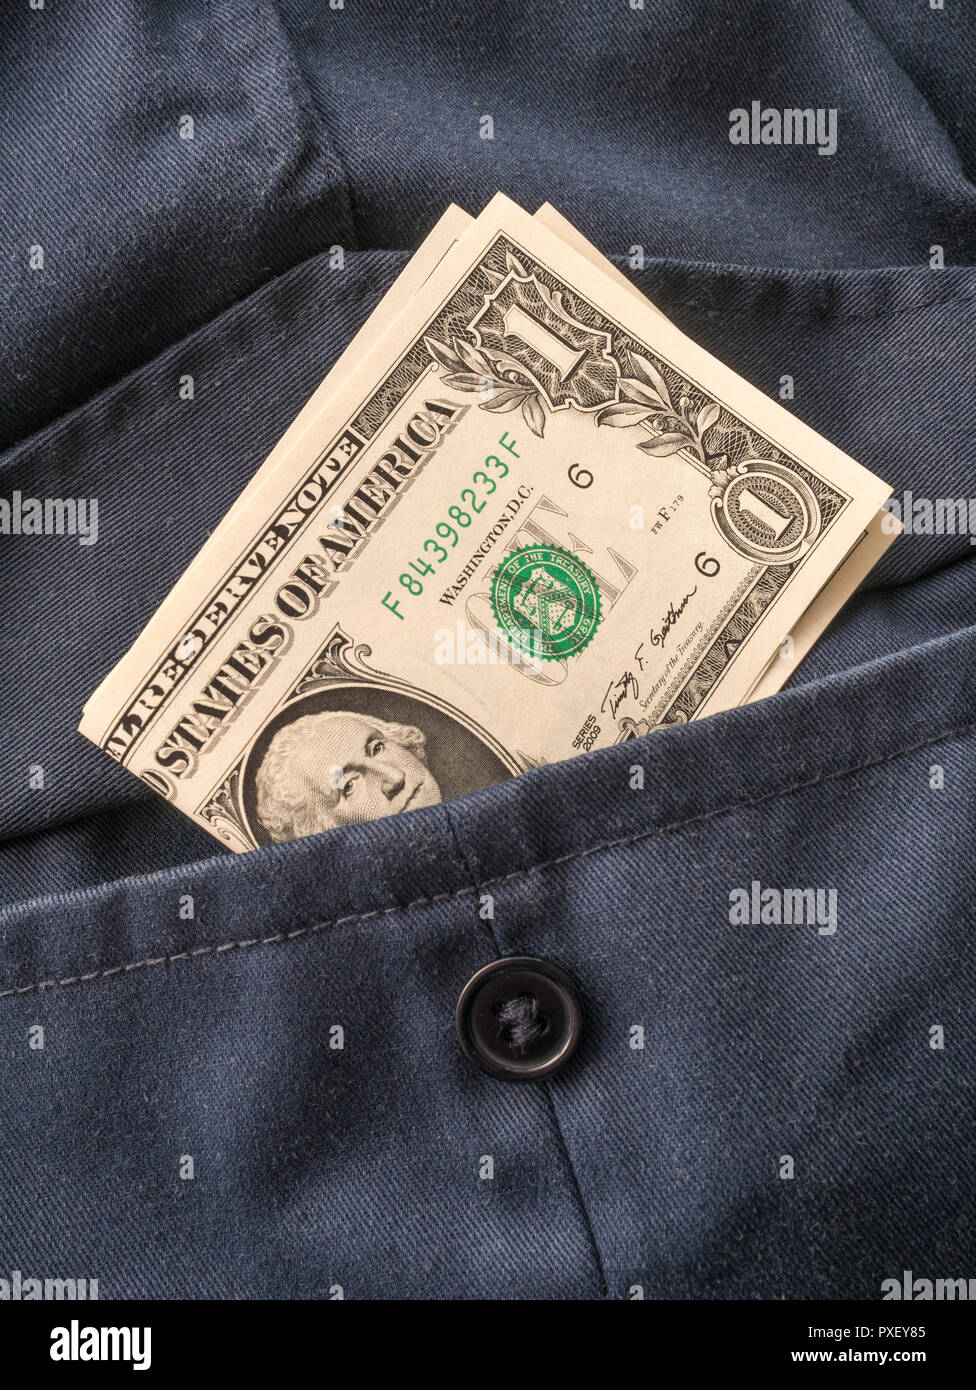 US / American $1 fatture del dollaro in tasca - metafora per 'i soldi nel vostro tasca ', guadagni degli Stati Uniti, economia di Biden. Metafora della crisi bancaria DEGLI STATI UNITI. Foto Stock